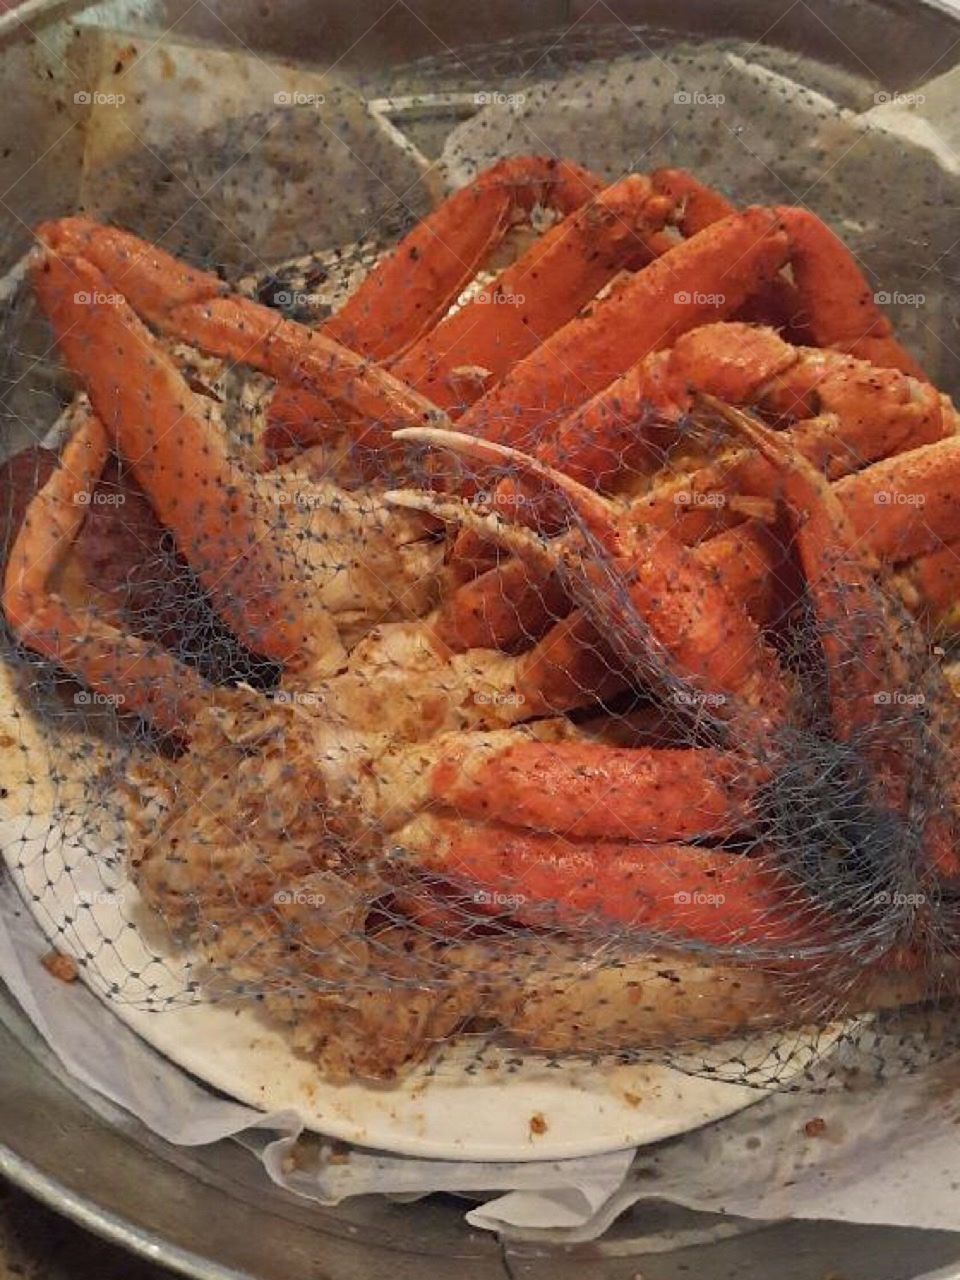 Bucket of crabs.